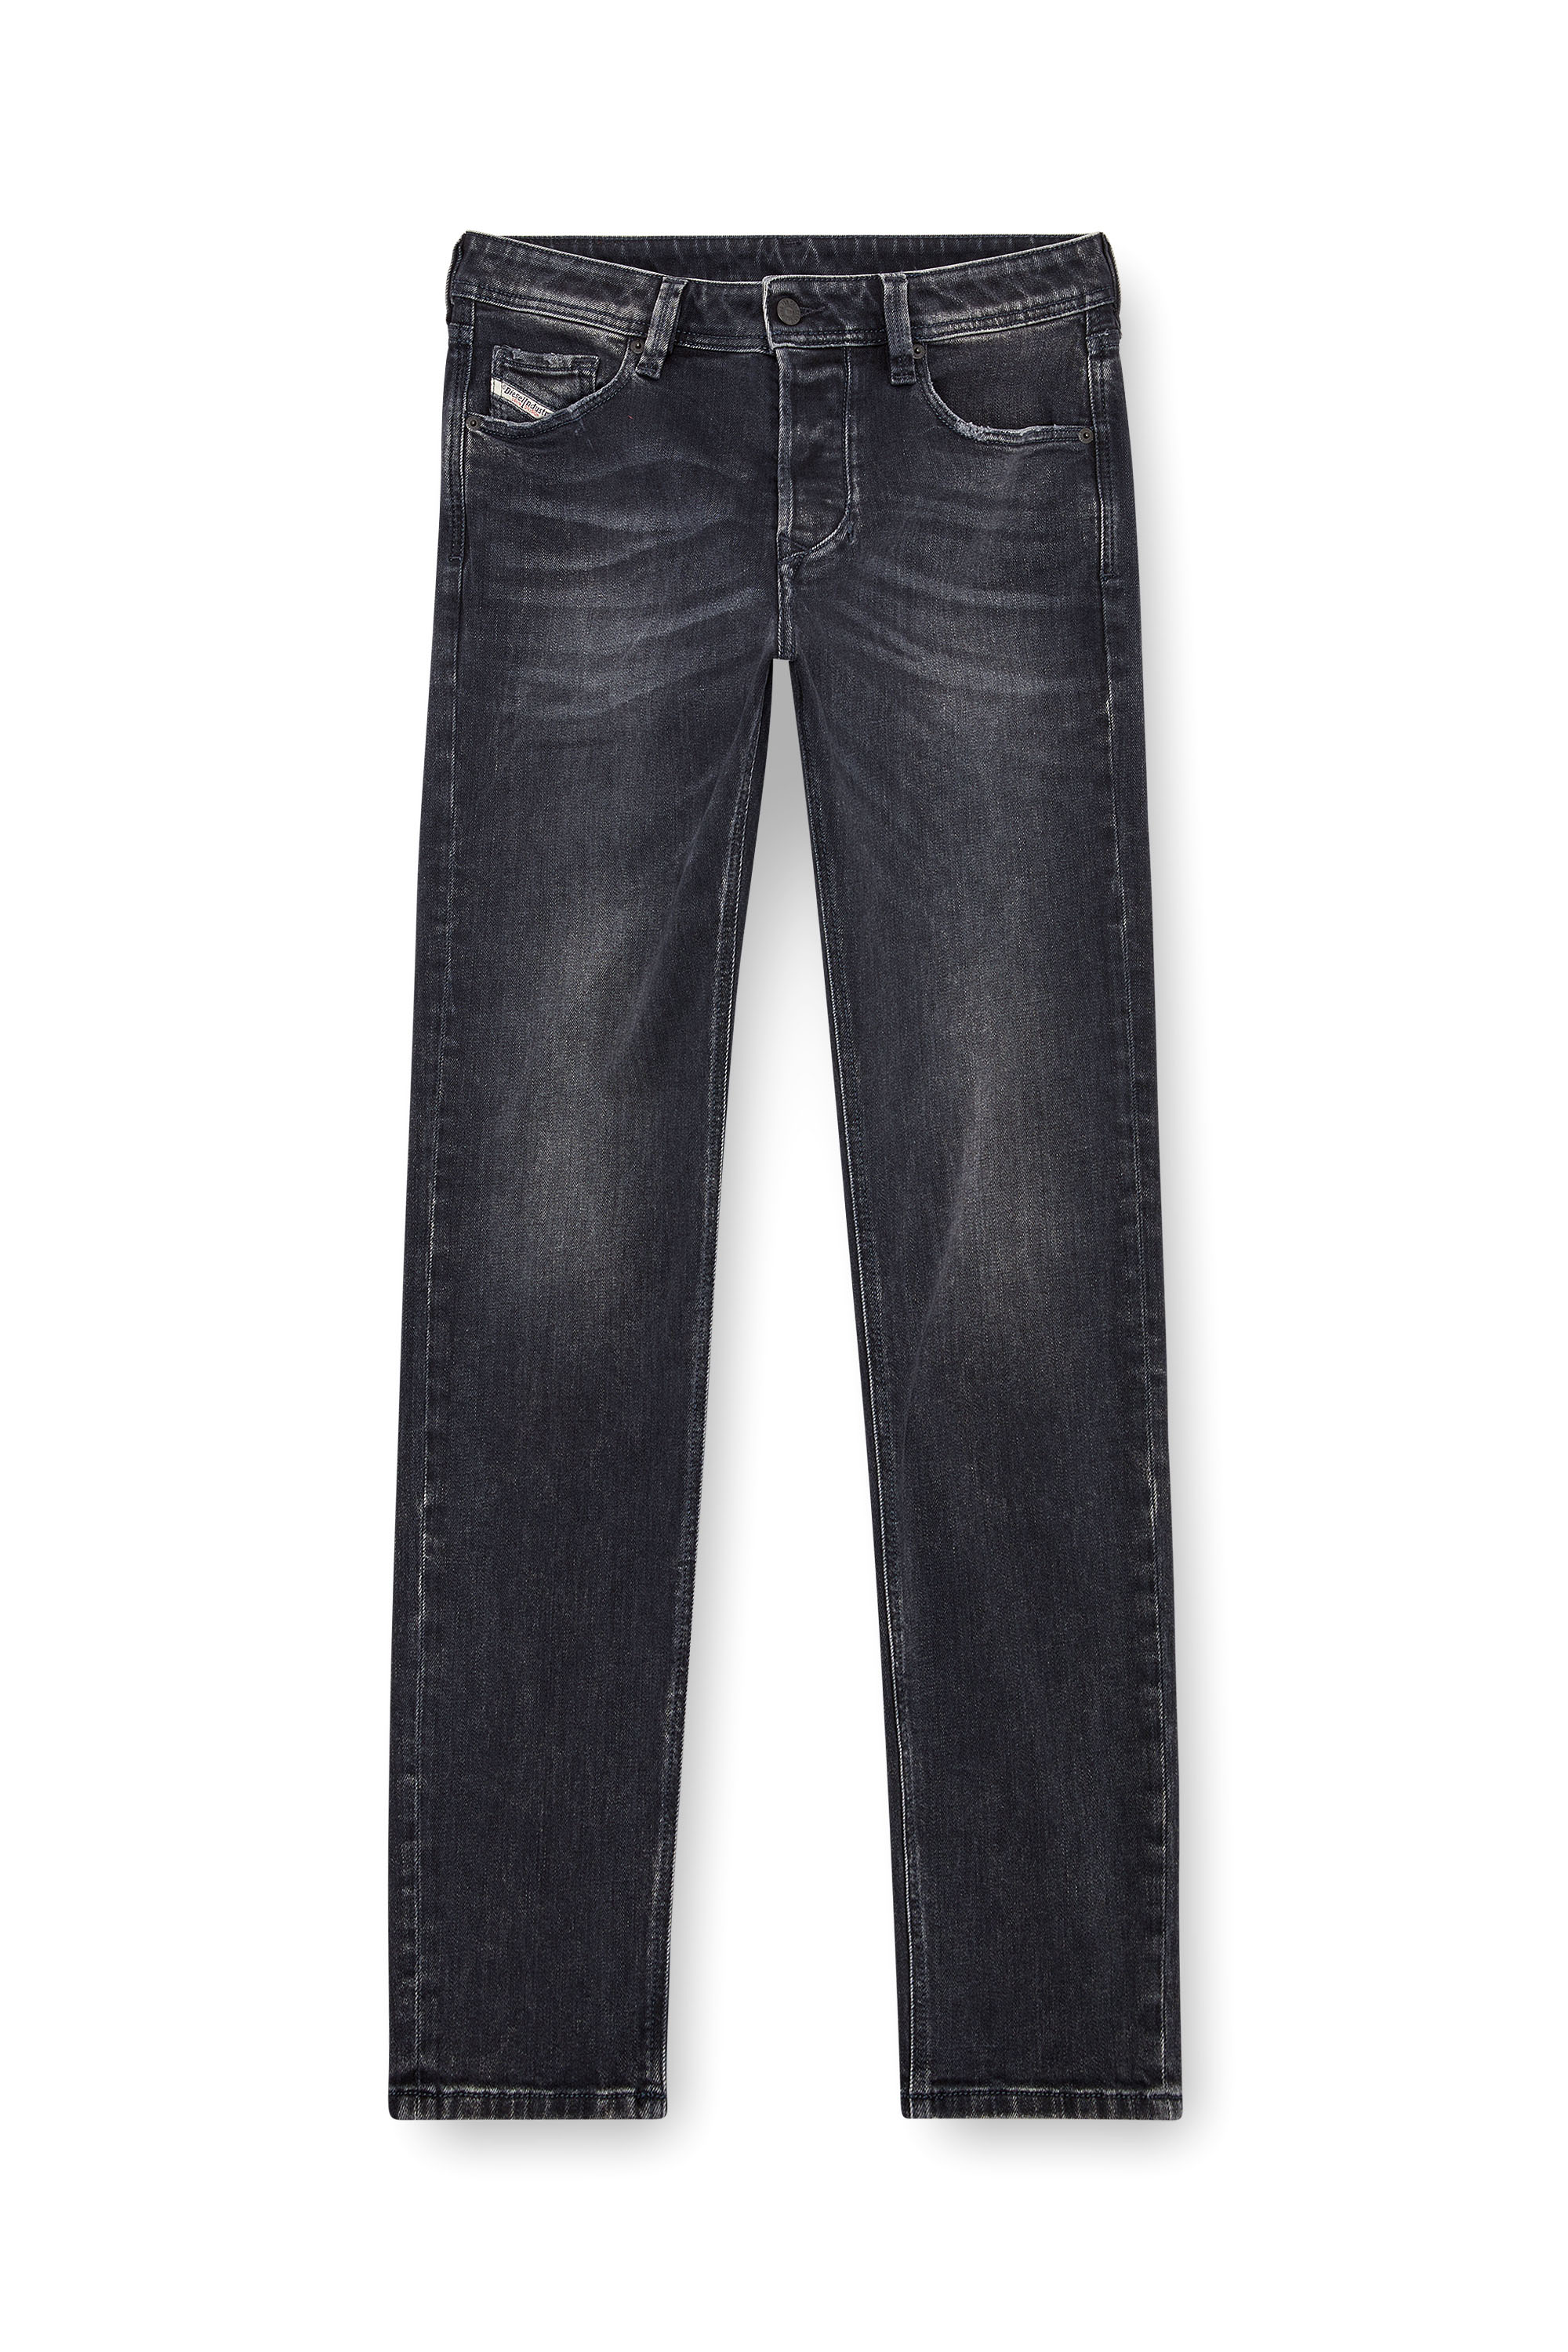 Diesel - Tapered Jeans 1986 Larkee-Beex 09K51, Black/Dark grey - Image 5